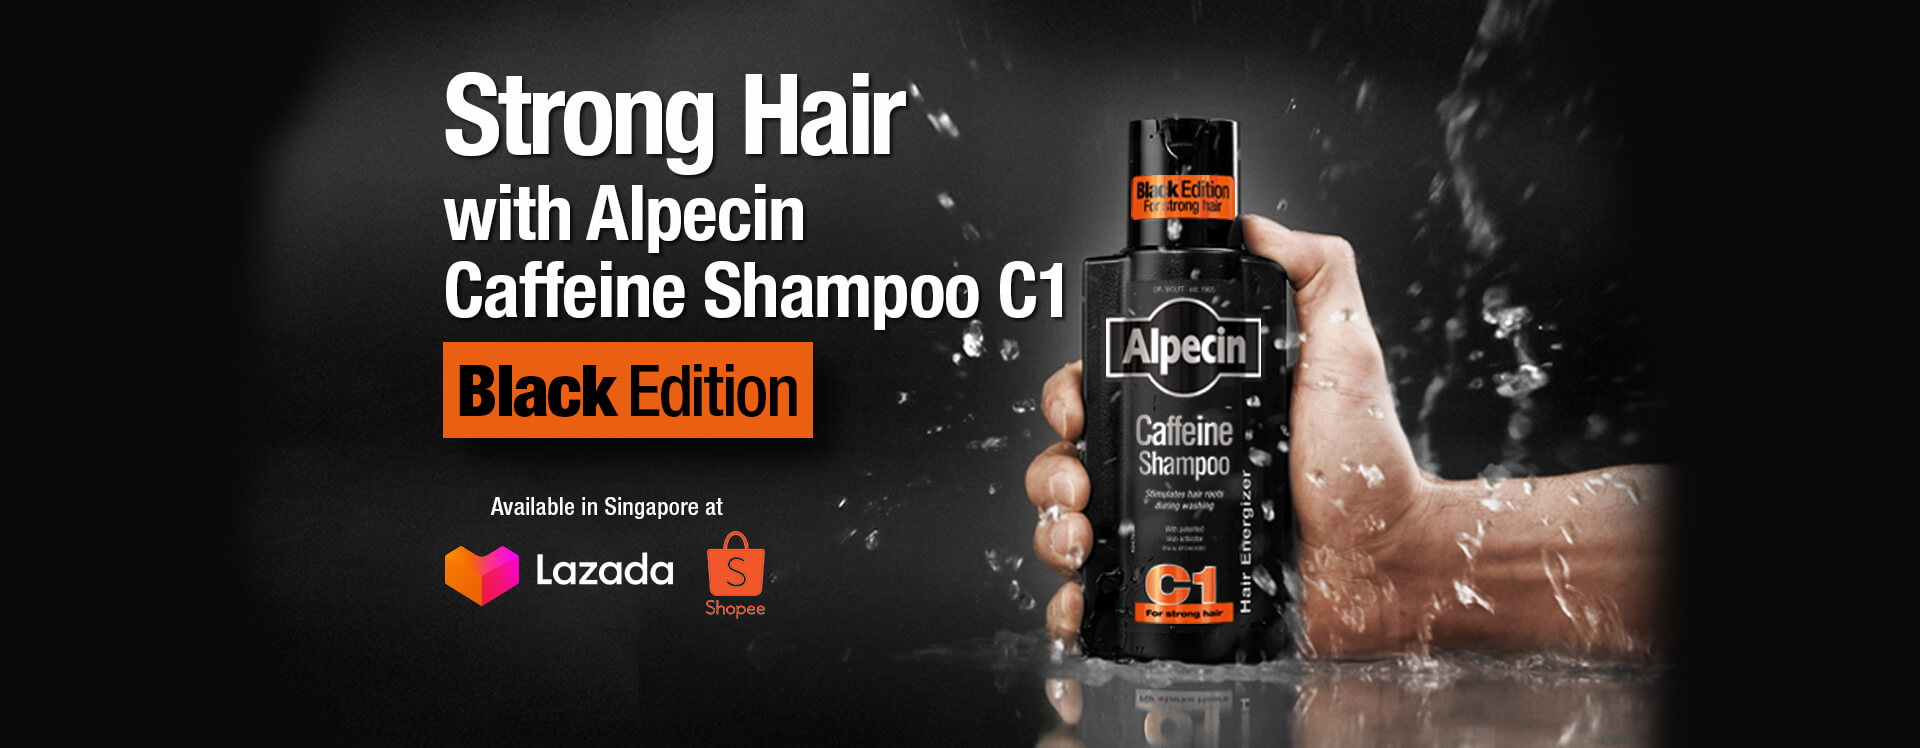 Strong Hair with Alpecin! With the new Alpecin Caffeine Shampoo Black Edition